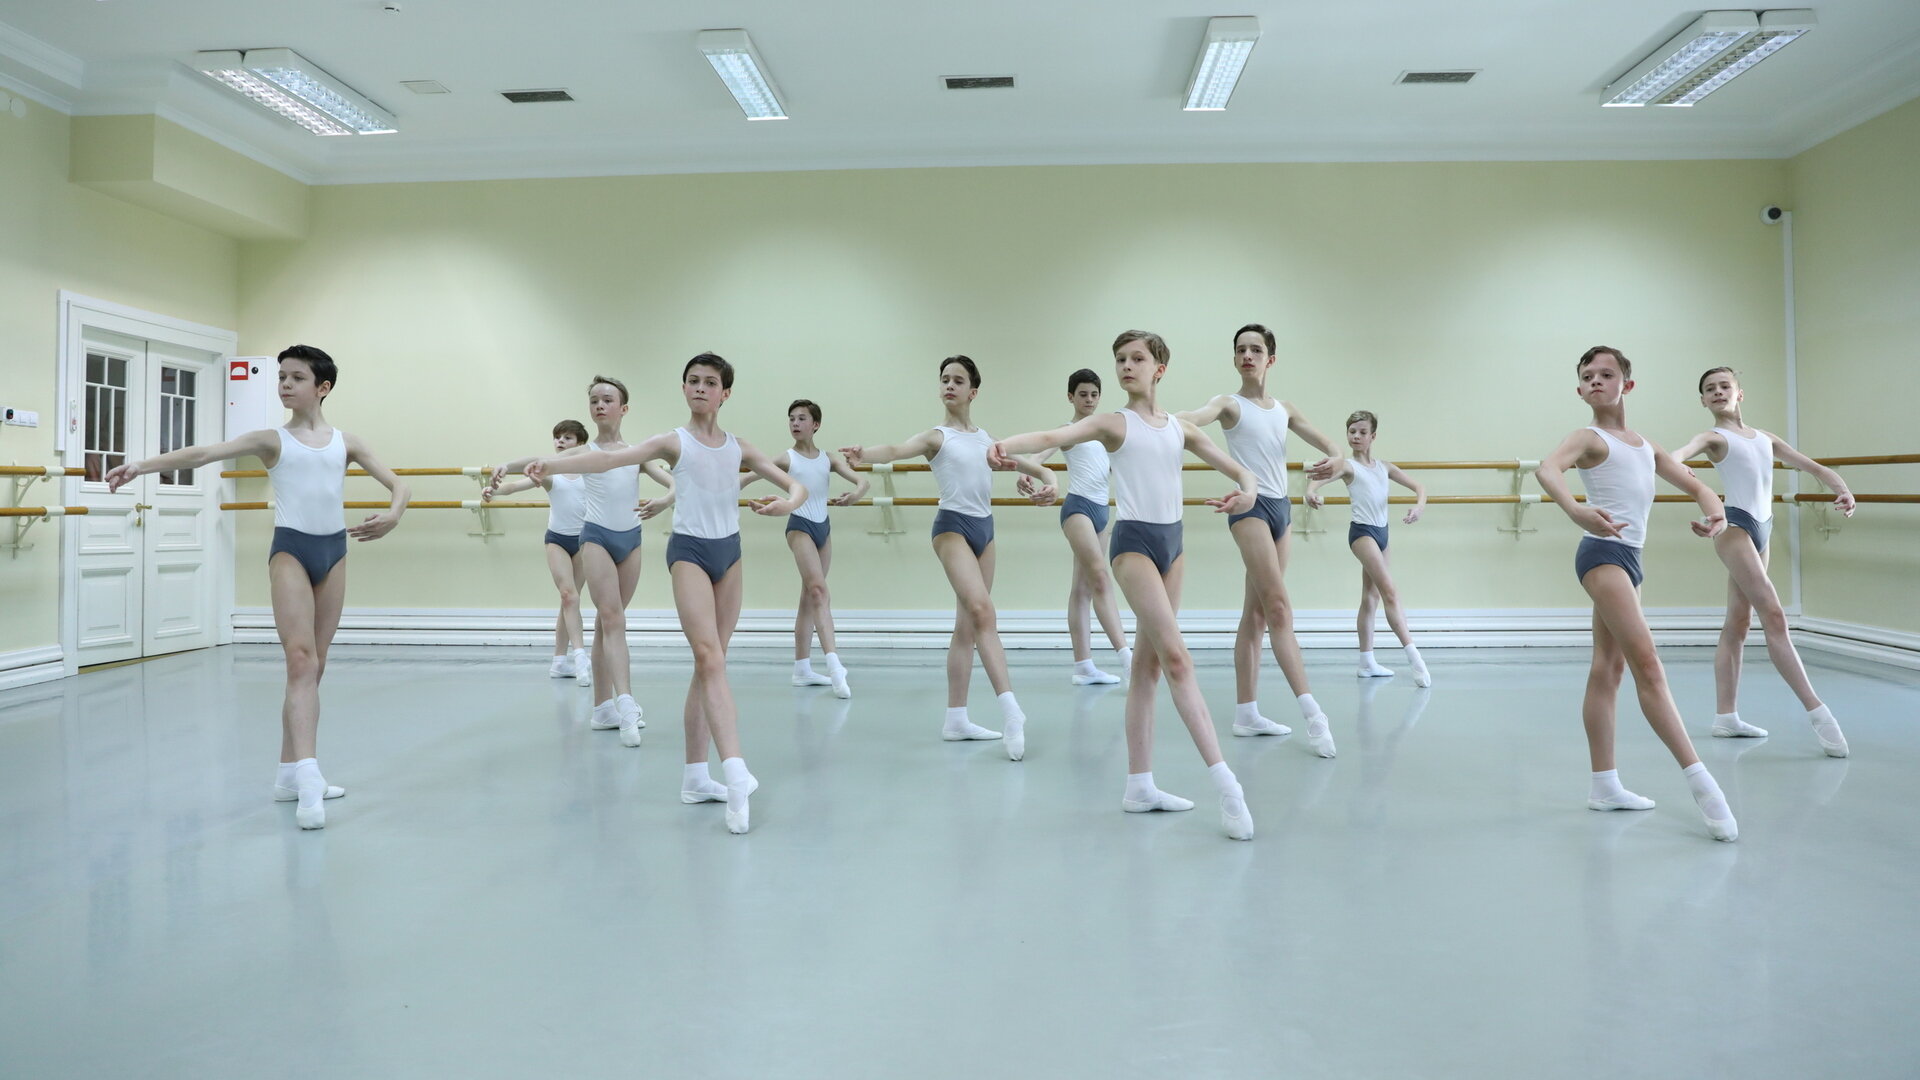 Академия Русского балета имени Вагановой проведёт отбор учеников в Калининграде